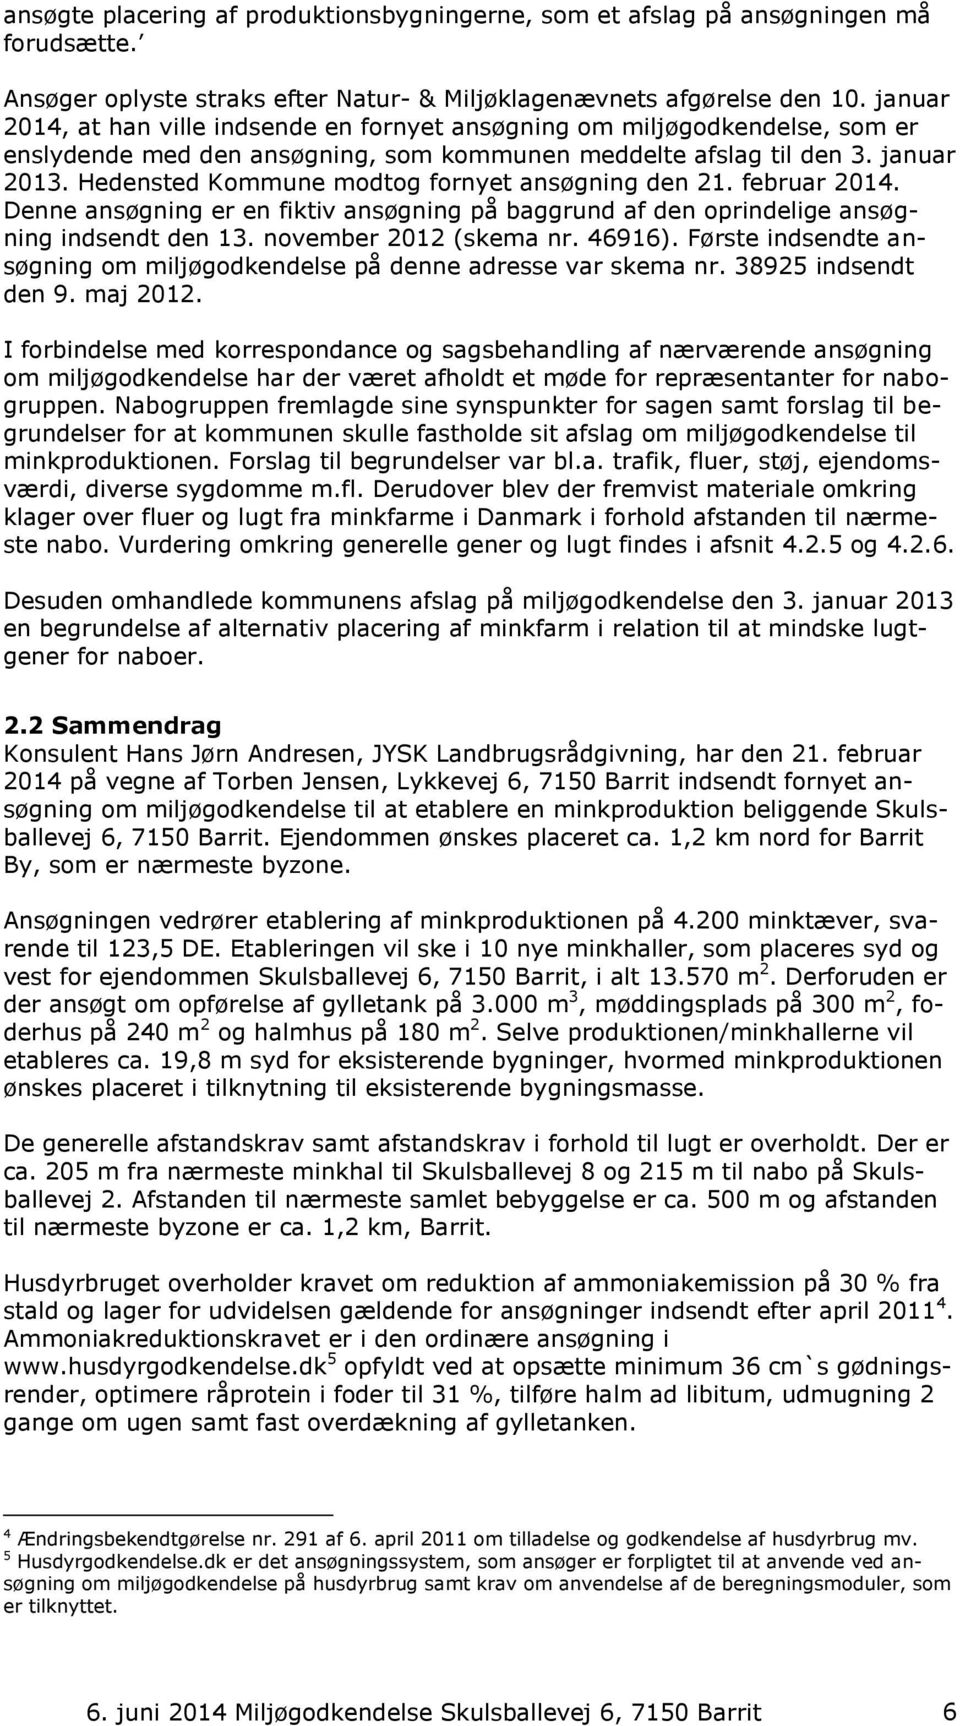 Hedensted Kommune modtog fornyet ansøgning den 21. februar 2014. Denne ansøgning er en fiktiv ansøgning på baggrund af den oprindelige ansøgning indsendt den 13. november 2012 (skema nr. 46916).